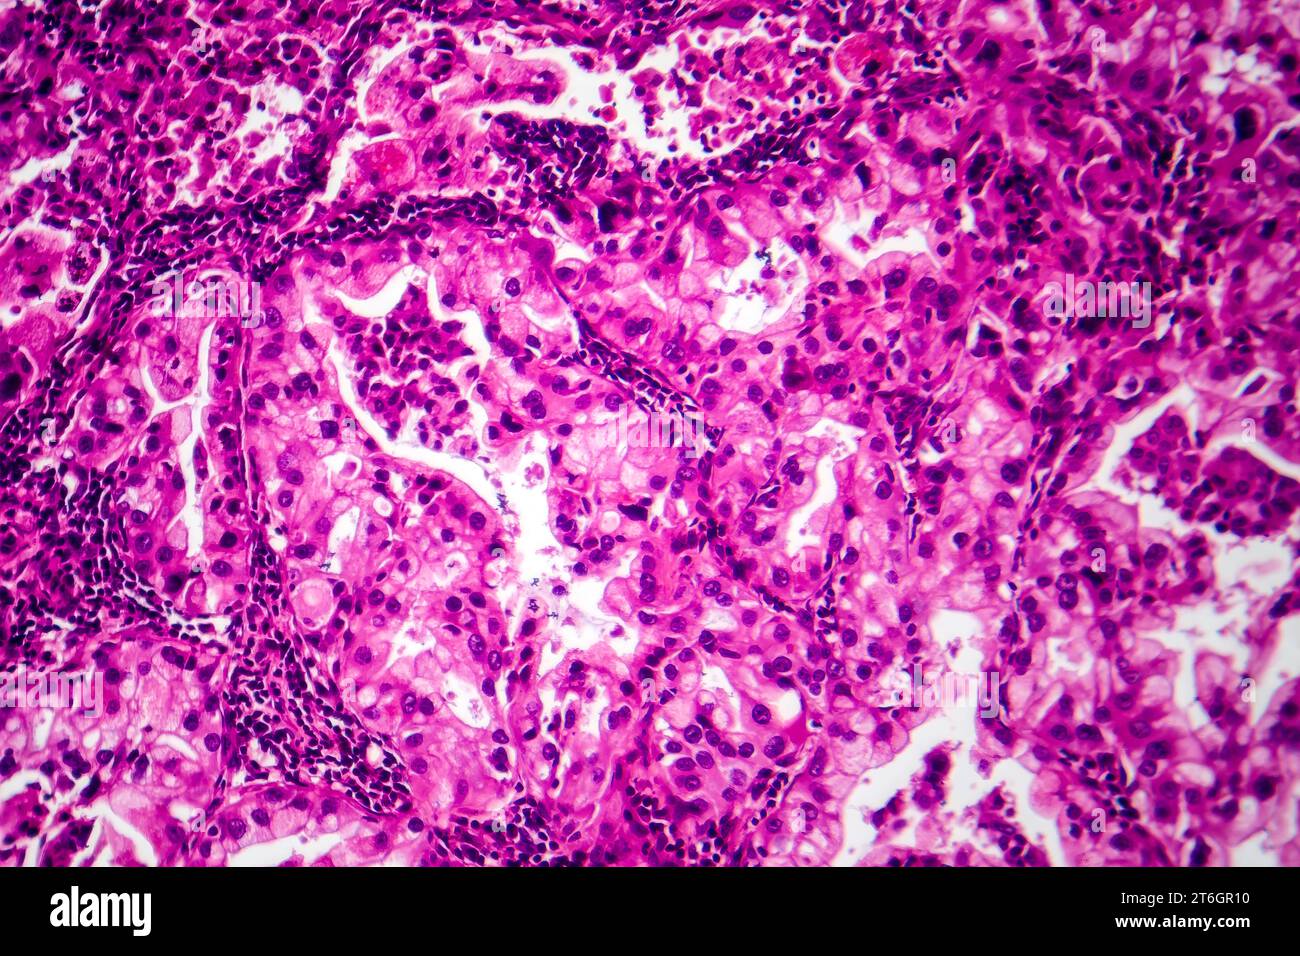 Photomicrographie du tissu cancéreux du poumon, révélant des cellules malignes et la croissance anormale caractéristique de la malignité du poumon. Banque D'Images